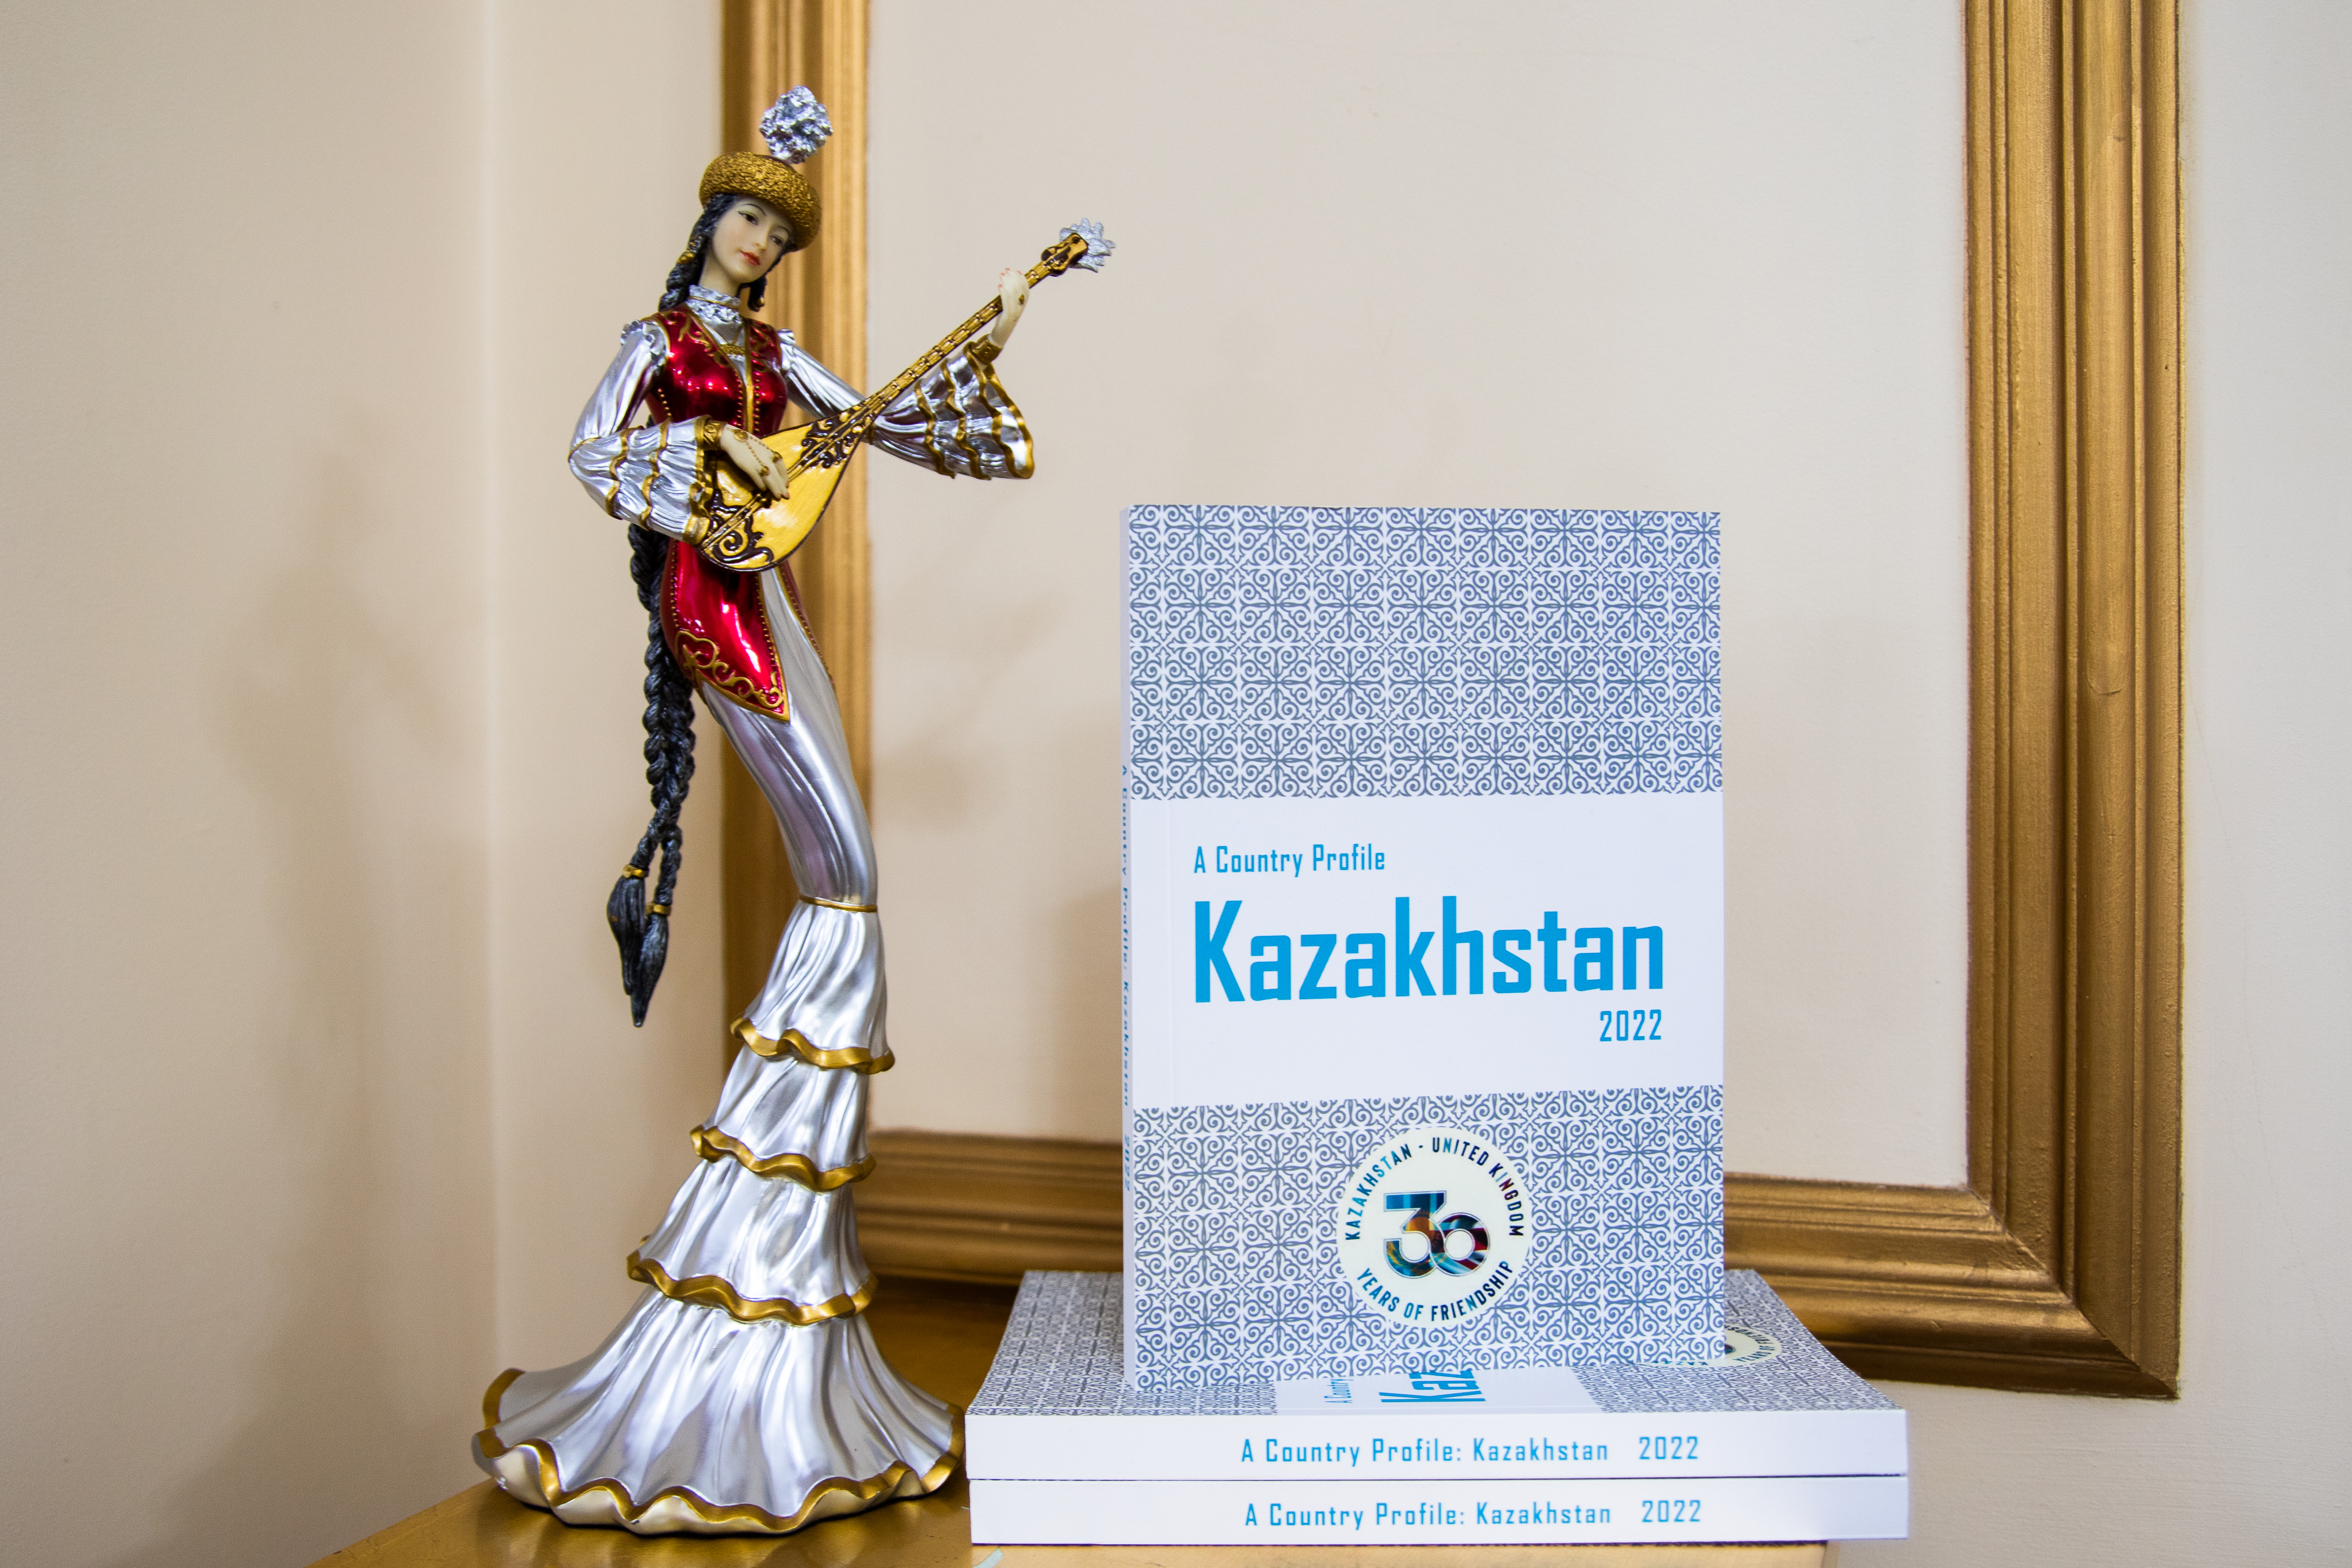 Страновой обзор Казахстана презентован в столице Великобритании